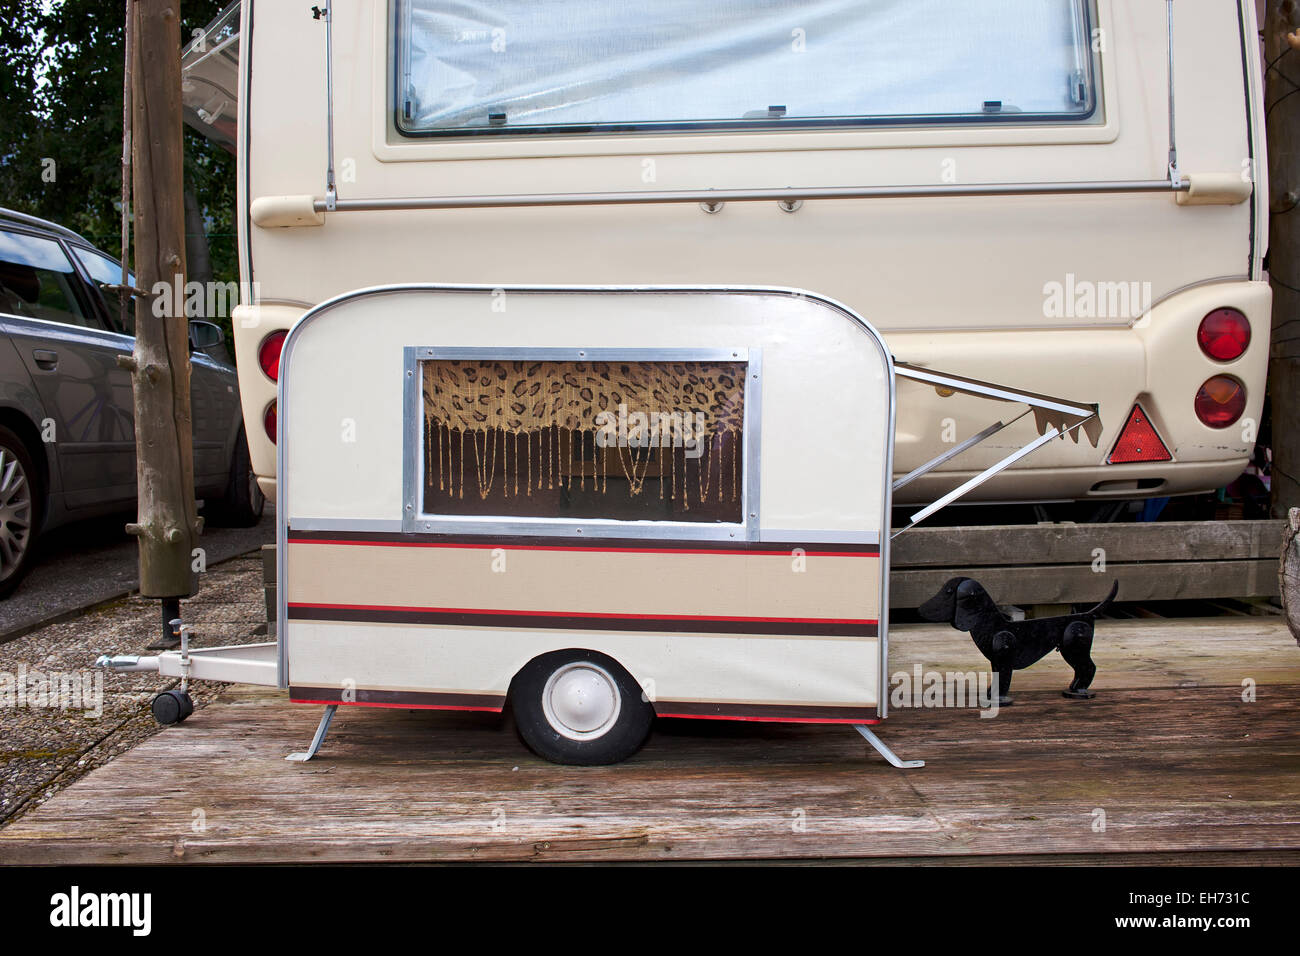 https://c8.alamy.com/compde/eh731c/kleines-modell-wohnwagen-fur-einen-kleinen-hund-geparkt-auf-der-ruckseite-der-eigentumer-in-voller-grosse-wohnwagen-auf-einem-campingplatz-eh731c.jpg